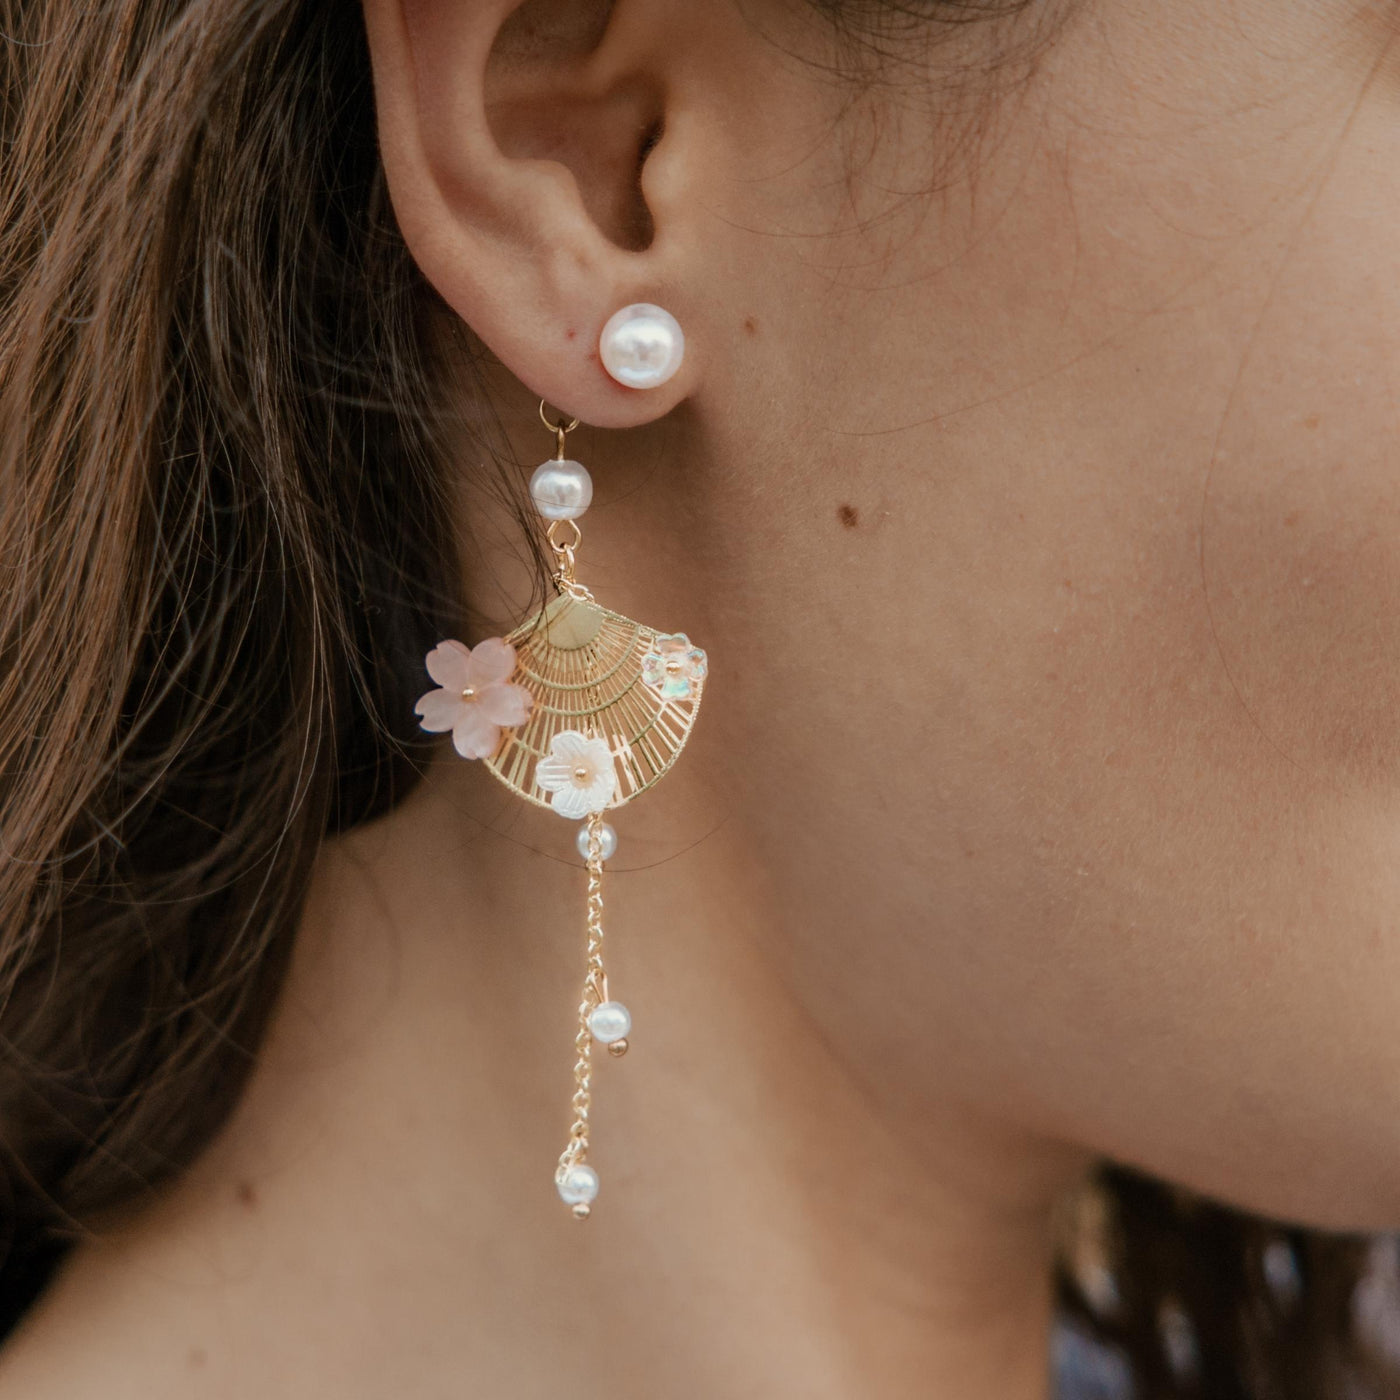 Cherry Blossom Fan Asymmetrical Dangle Earrings | Dainty Korean Earrings | Pink Flower Earrings | Jewelry with Meaning | Soul Charms